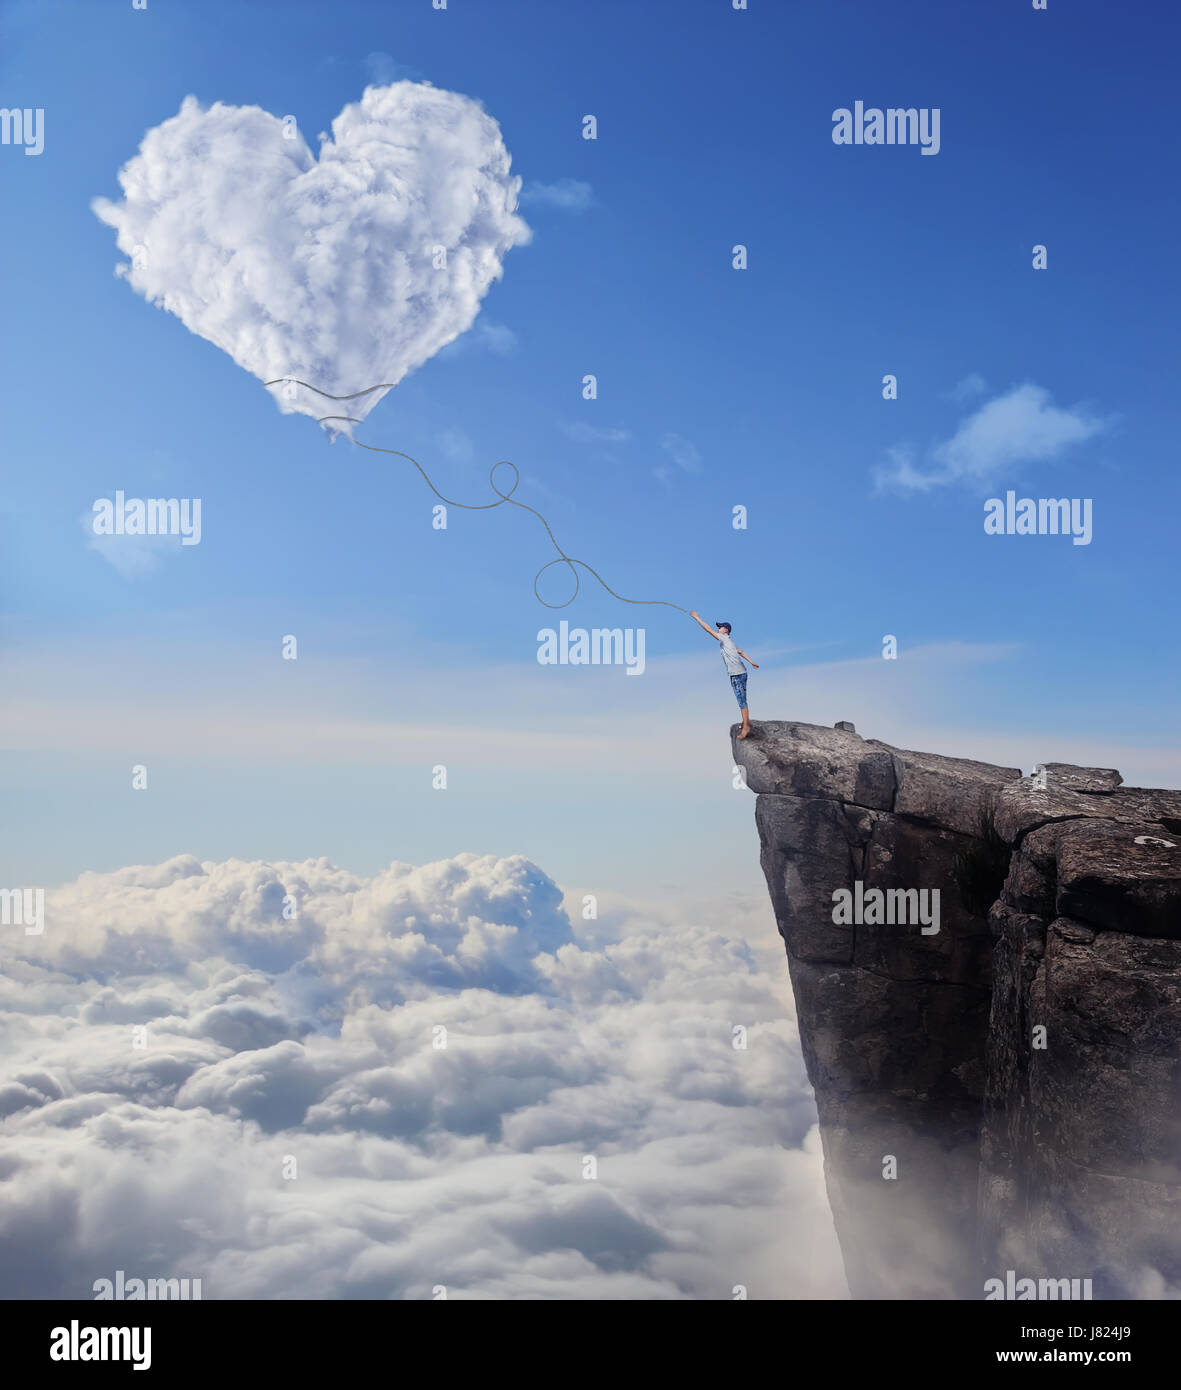 Vue imaginaire avec un garçon sur le bord d'une falaise, en essayant d'attraper un nuage en forme de coeur avec une longue corde. Suivez votre coeur concept. Banque D'Images